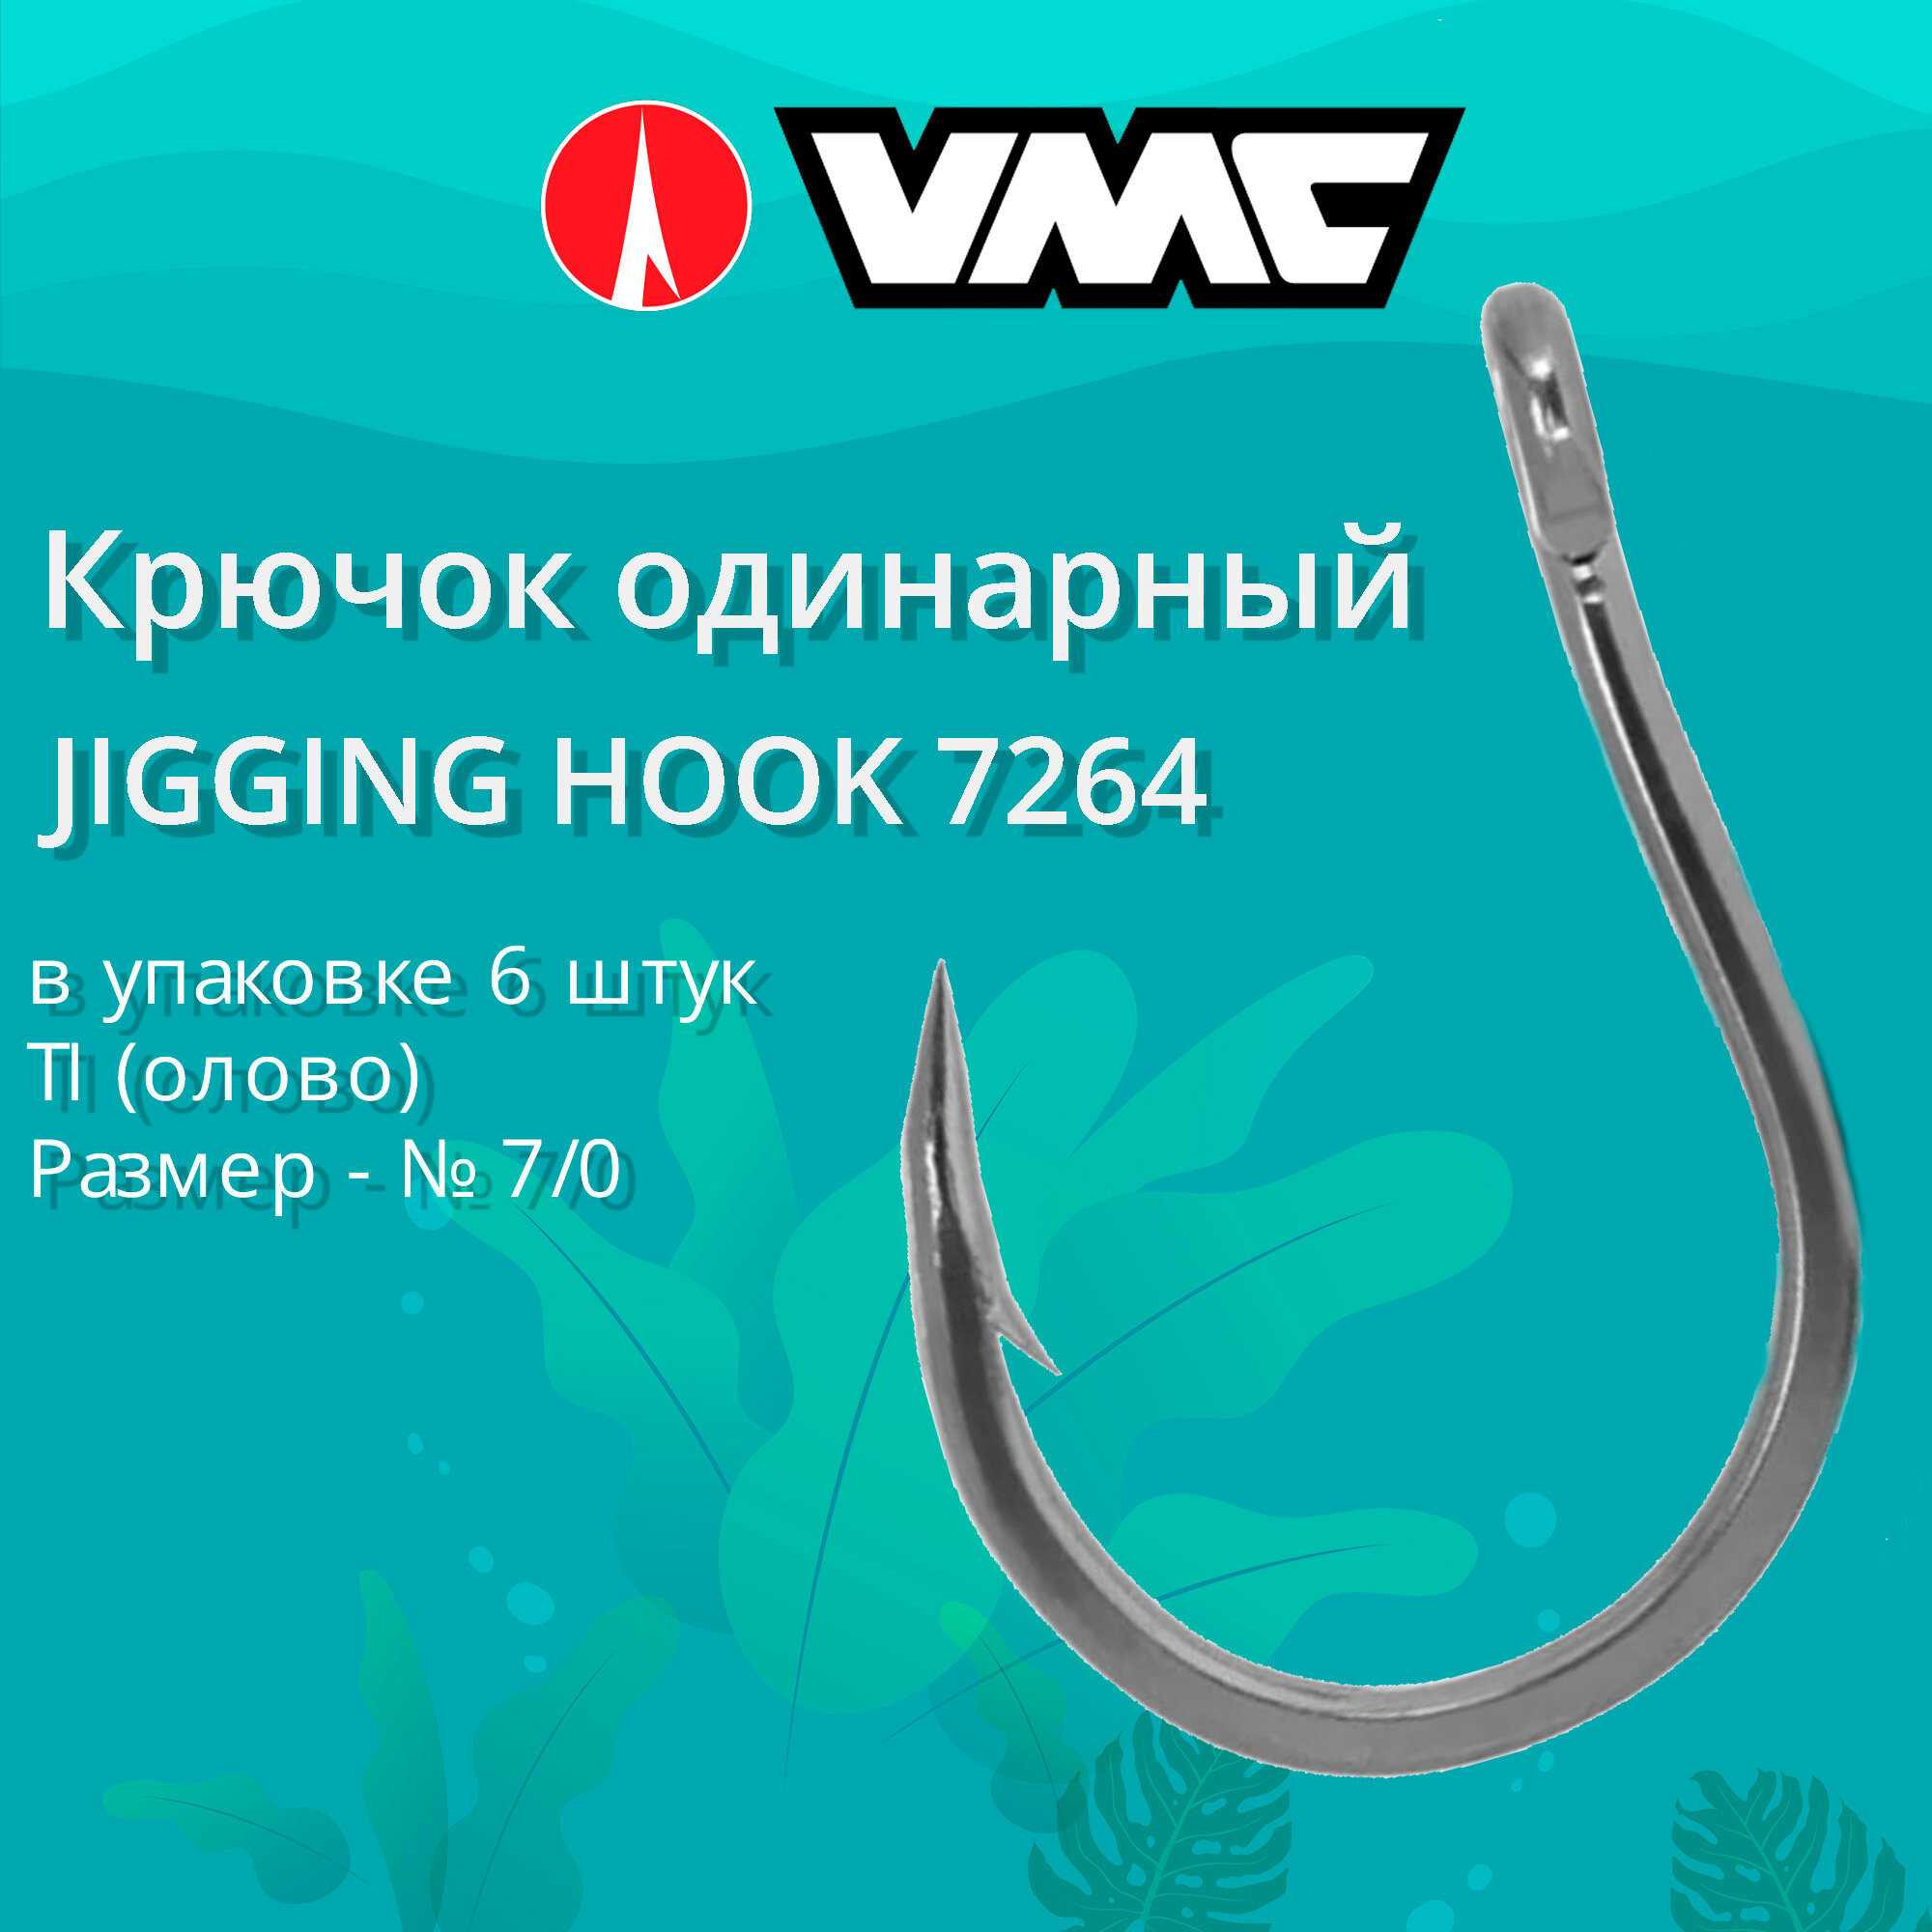 Крючок одинарный рыболовный VMC JIGGING HOOK 7264 TI (олово), №7/0, 6 штук в упаковке